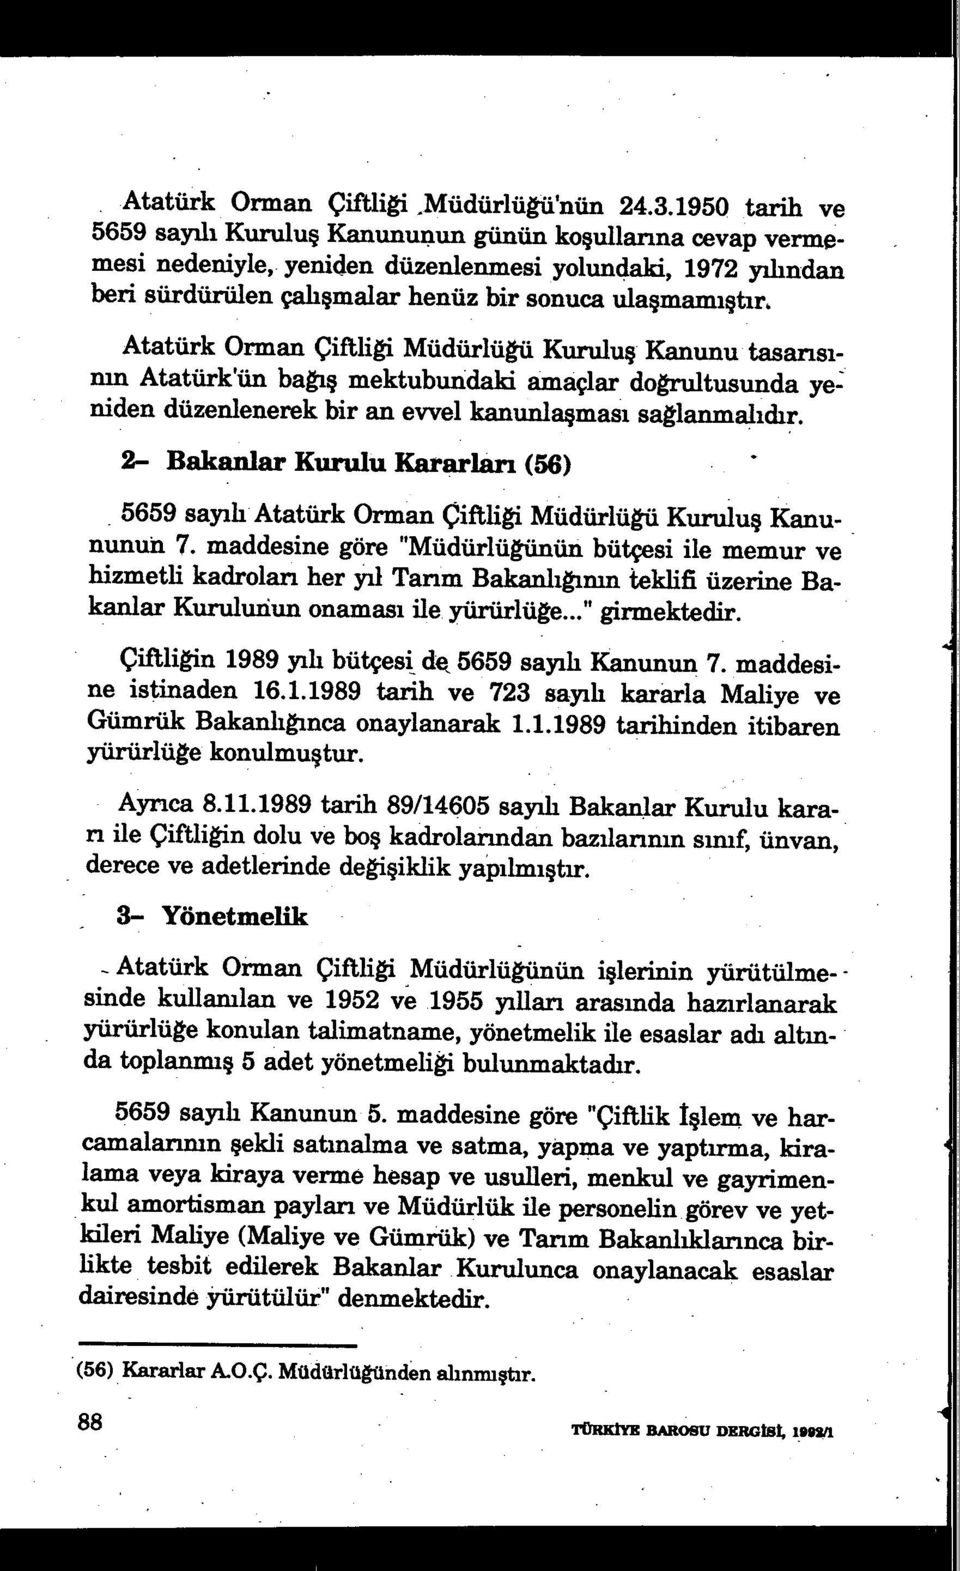 Atatürk Orman Çiftliği Müdürlüğü Kuruluş Kanunu tasarısımn Atatürk'ün bağış mektubundaki amaçlar doğrultusunda yeniden düzenlenerek bir an evvel kanunla şması sağlanmalıdır.